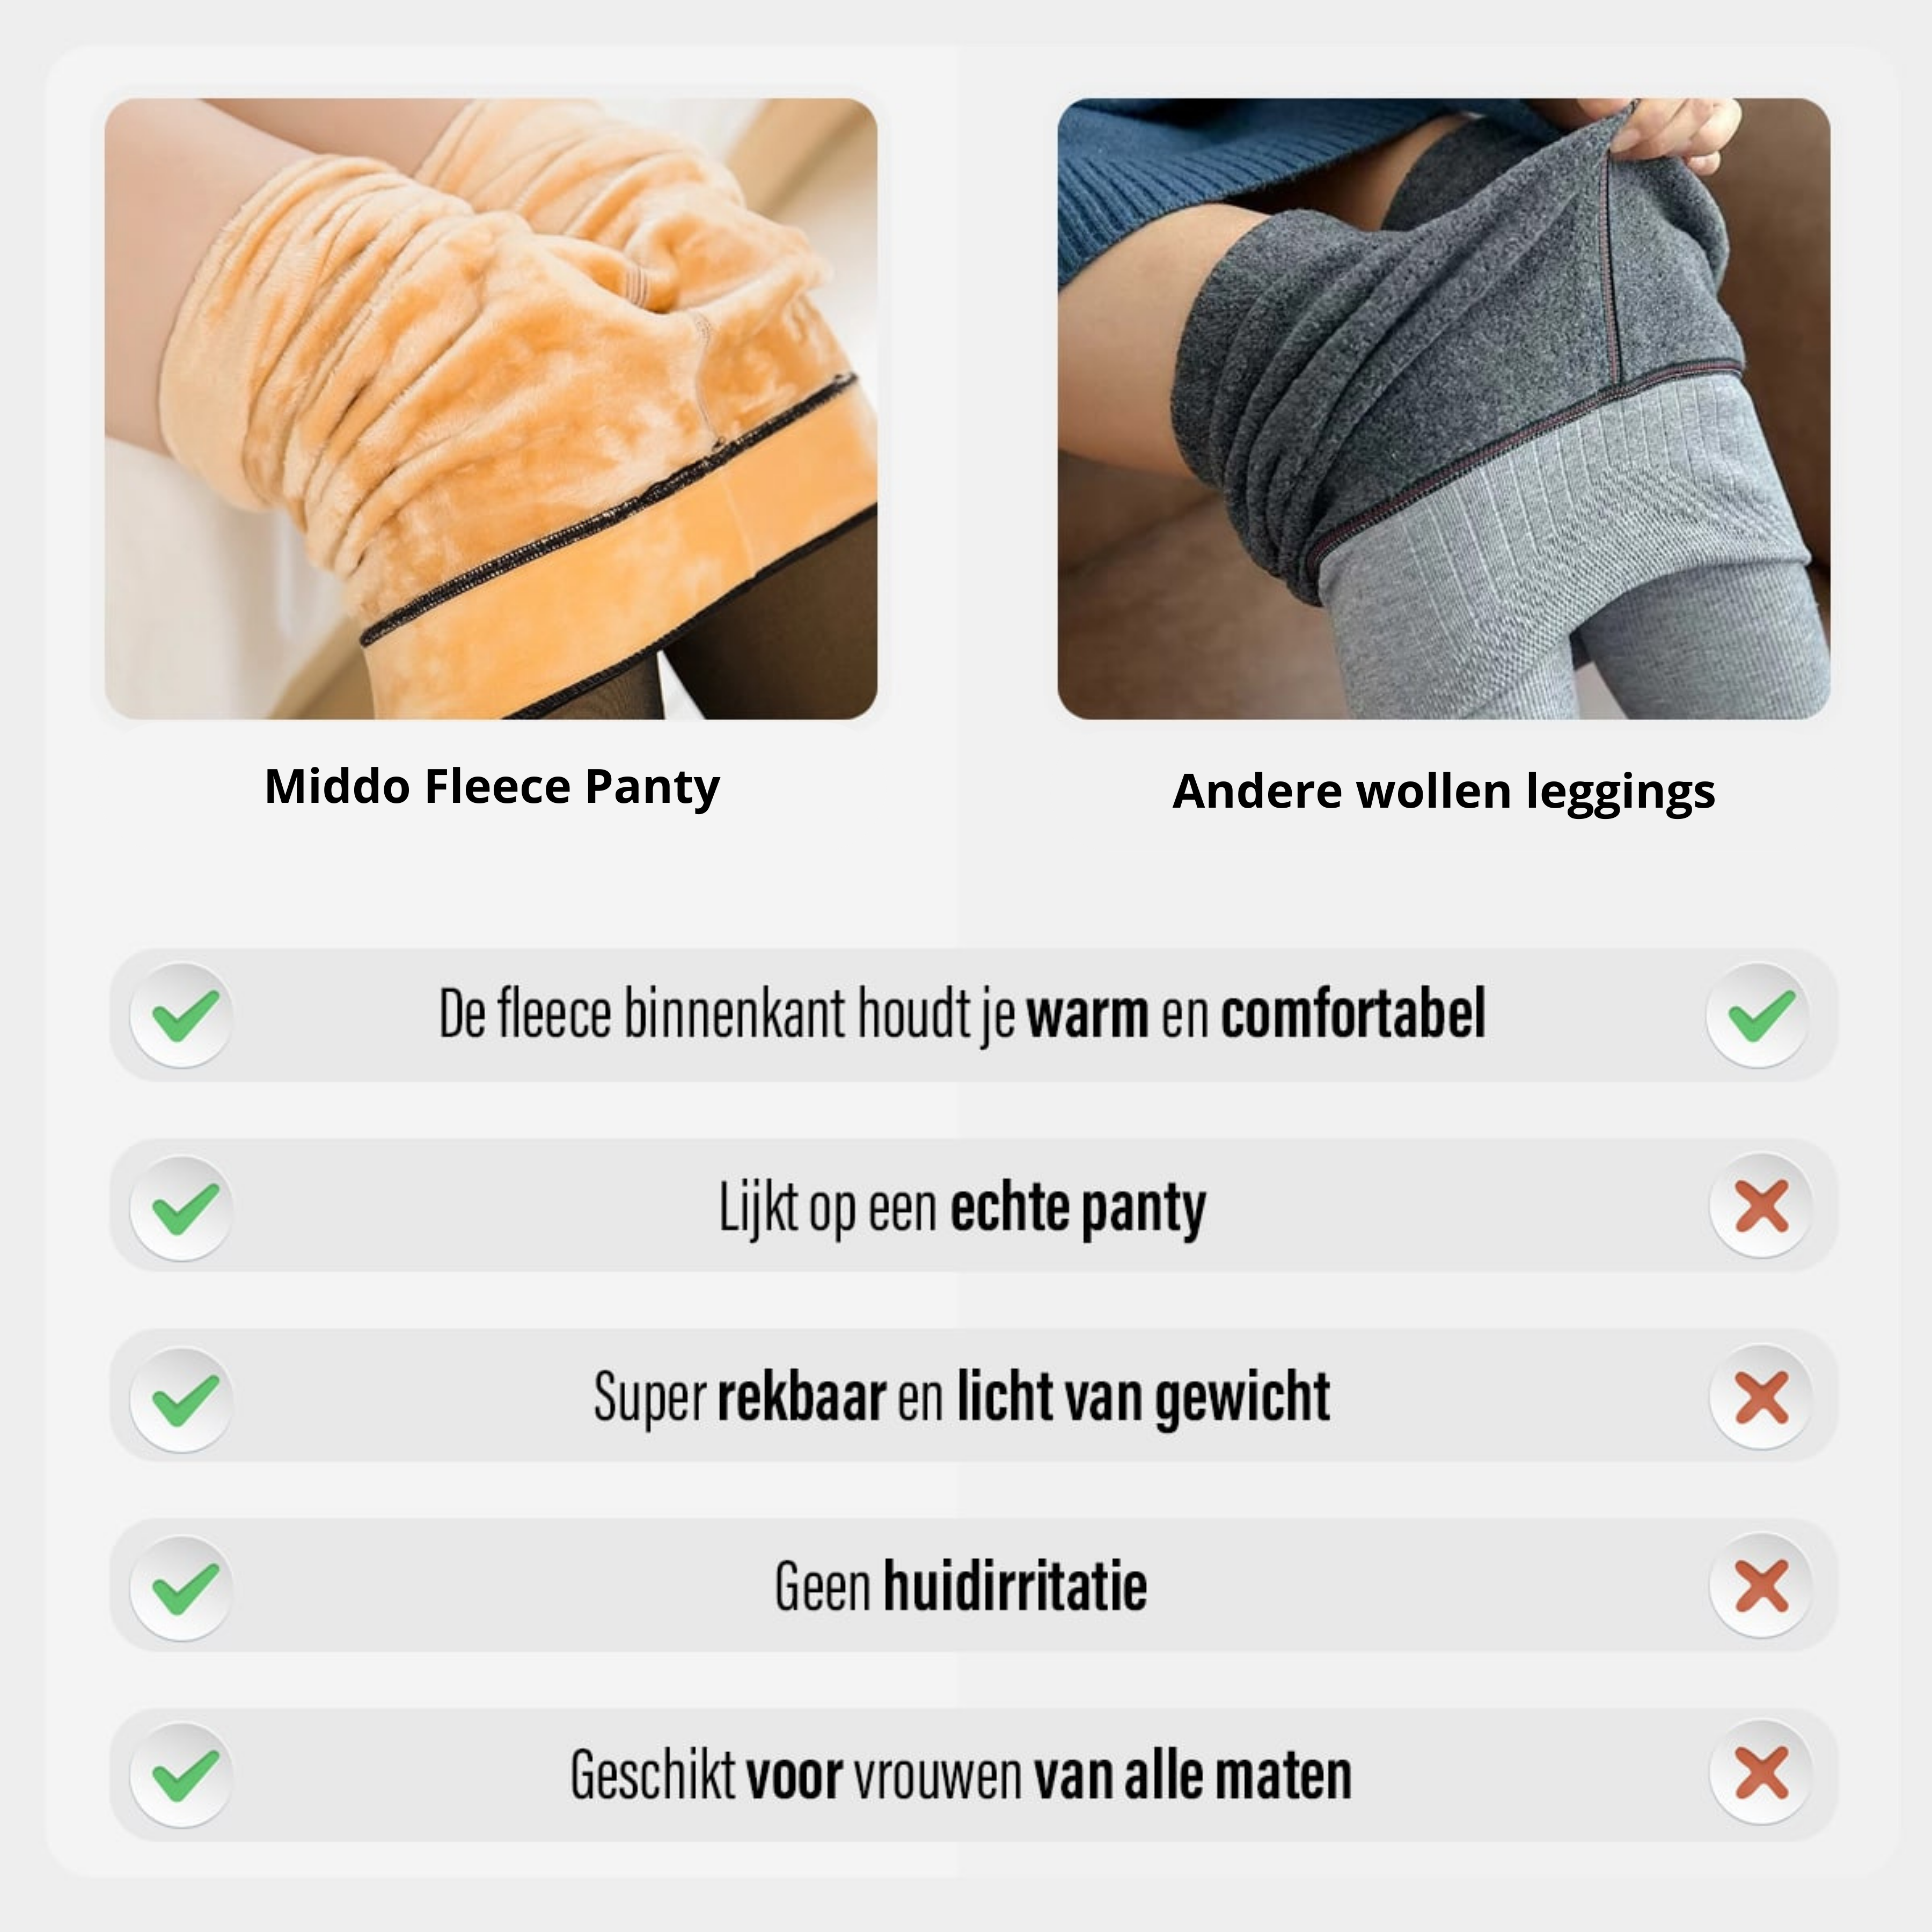 Vergelijking van Middo Fleece Panty met andere wollen leggings.